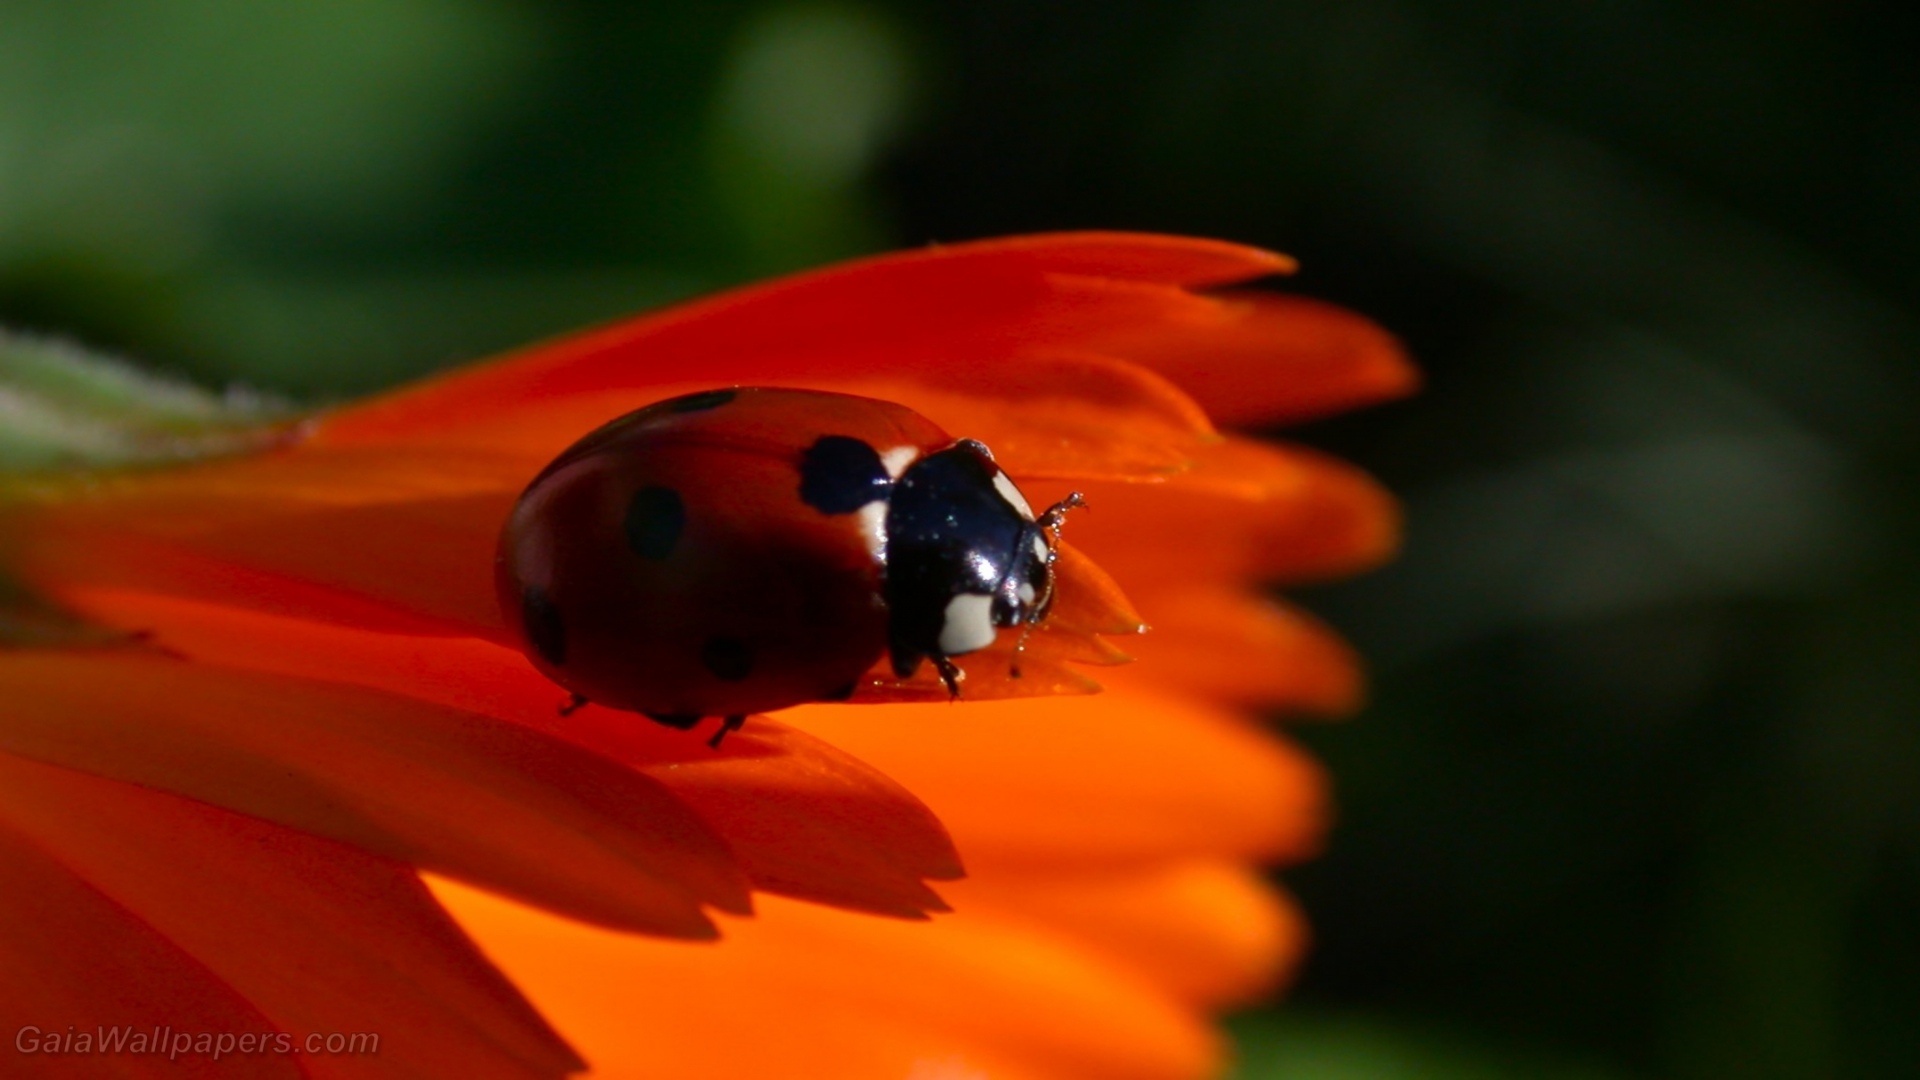 Ladybird on a zinnia - Free desktop wallpapers